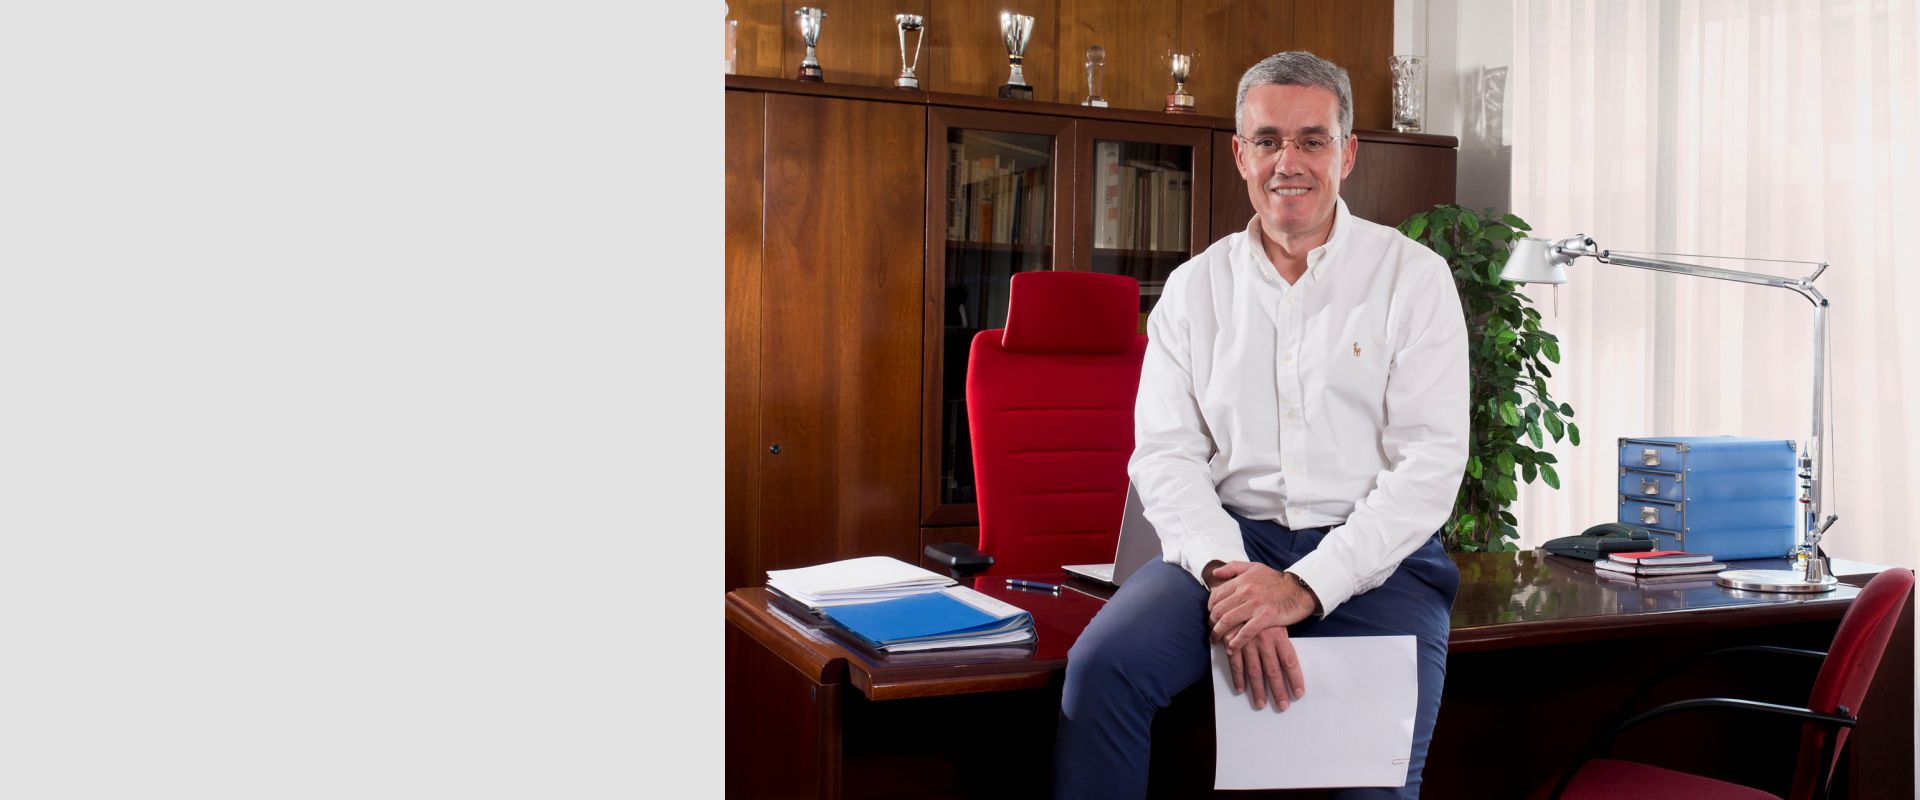 Enrique Gutiérrez administración de fincas en Valladolid